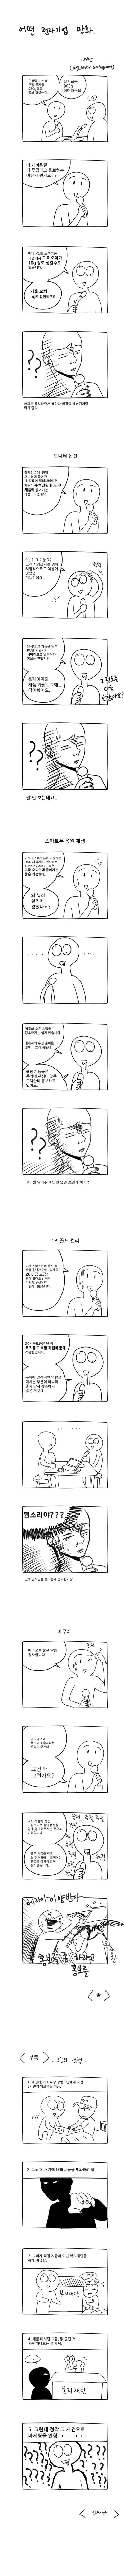 다시보는 LG홍보팀 만화